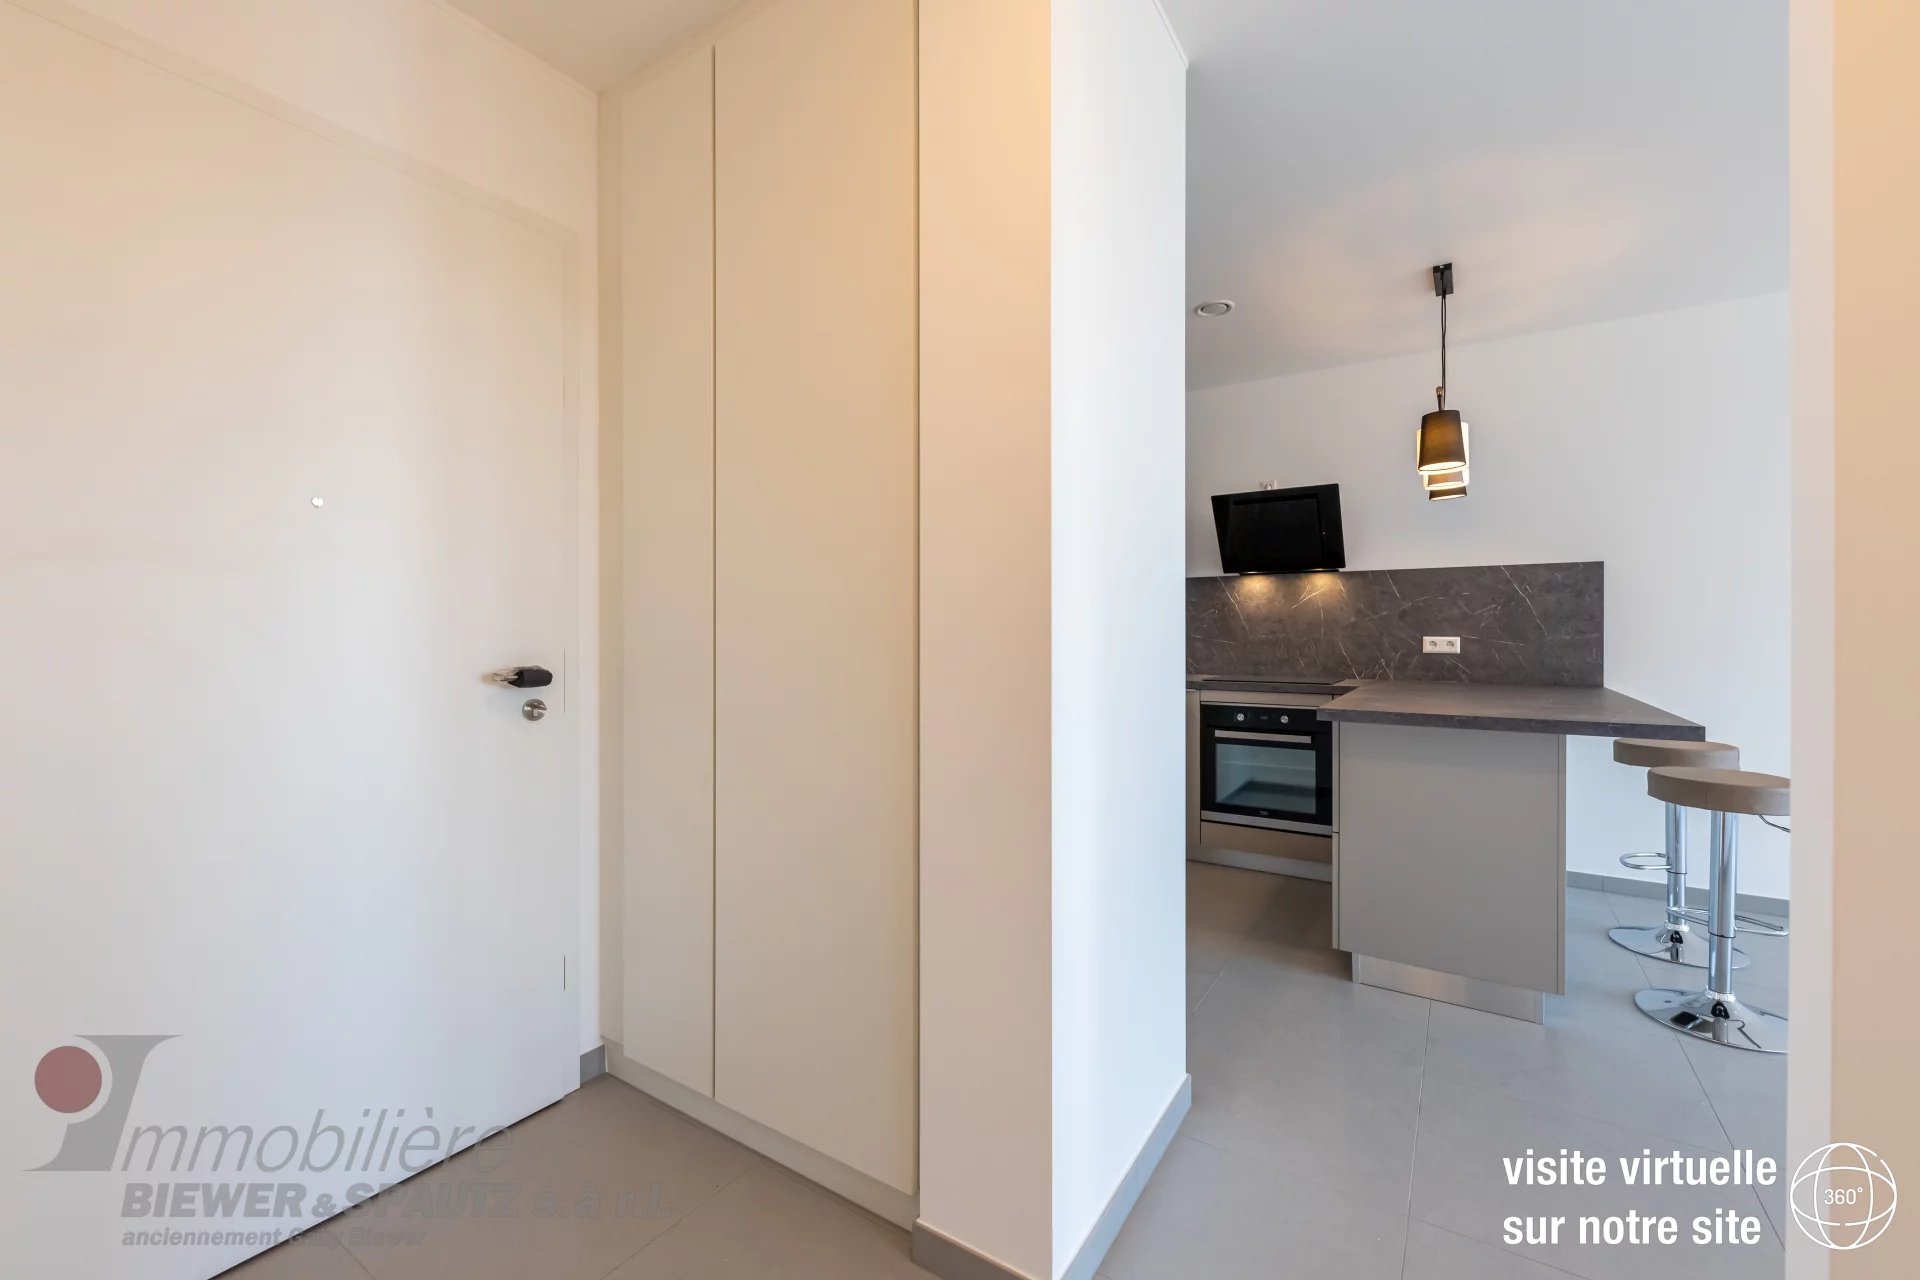 RÉSERVÉ - appartement neuf avec 1 chambre à coucher à Luxembourg-Gasperich